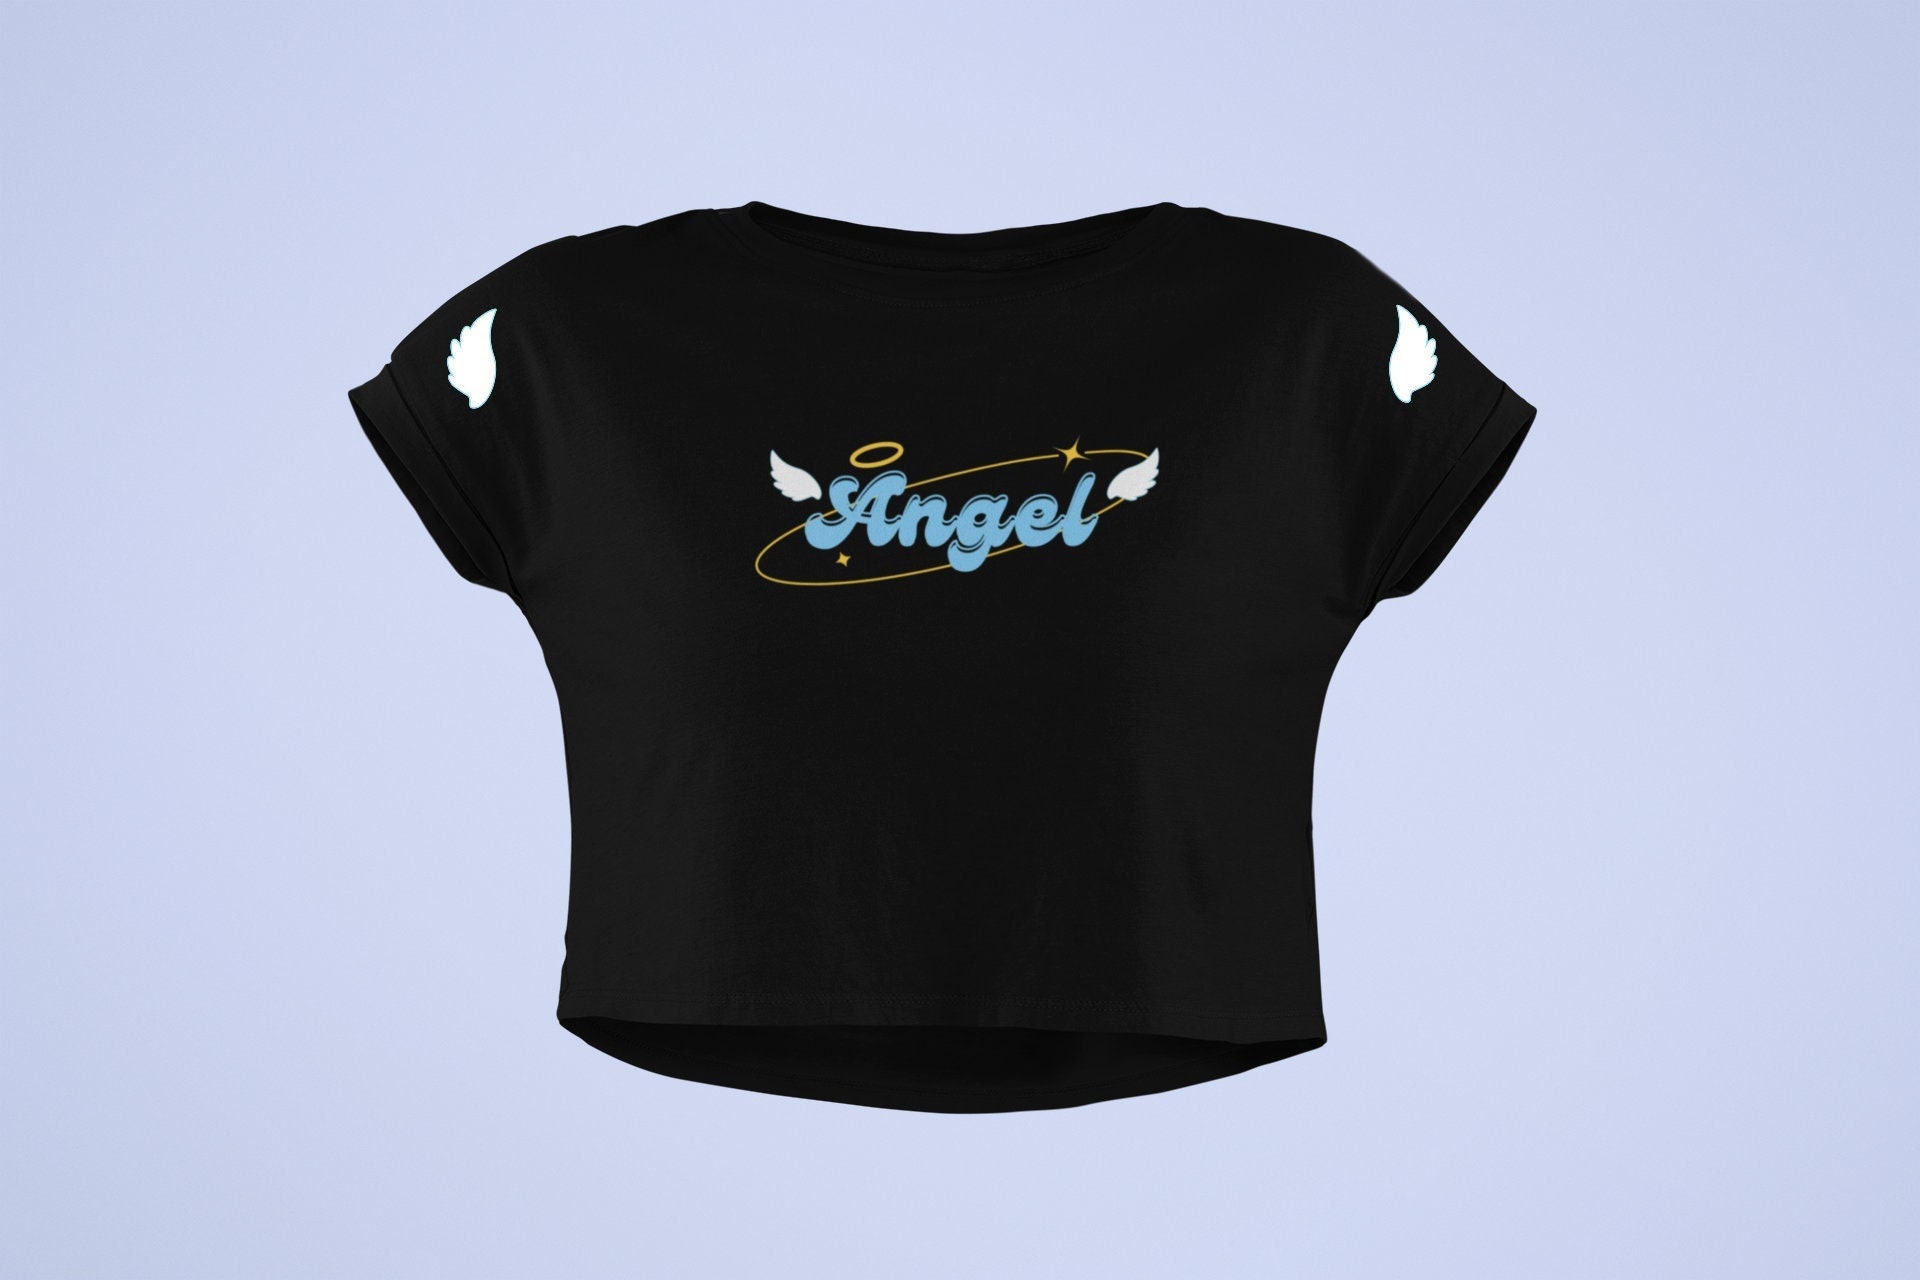 Angel Crop Top Flowy Fit Crop Top Y2K Clothing Trendy Top Graphic